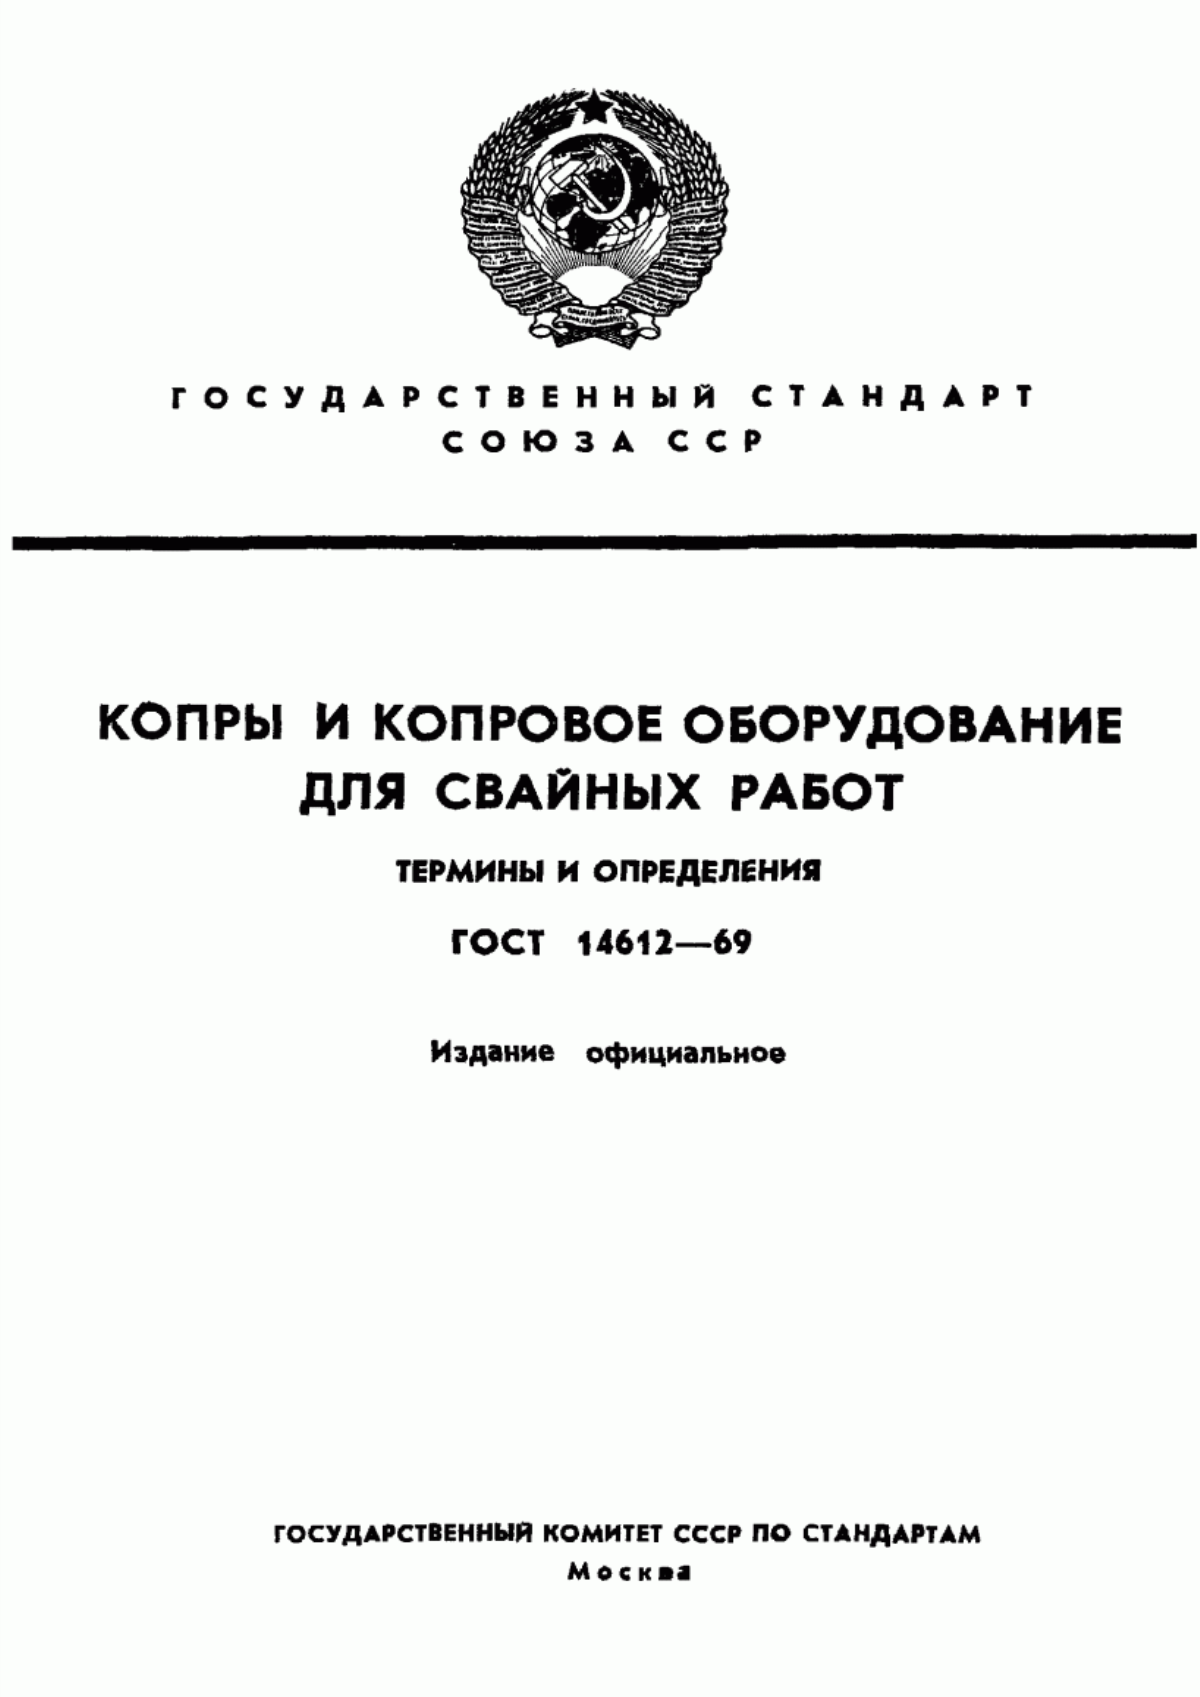 ГОСТ 14612-69 Копры и копровое оборудование для свайных работ. Термины и определения